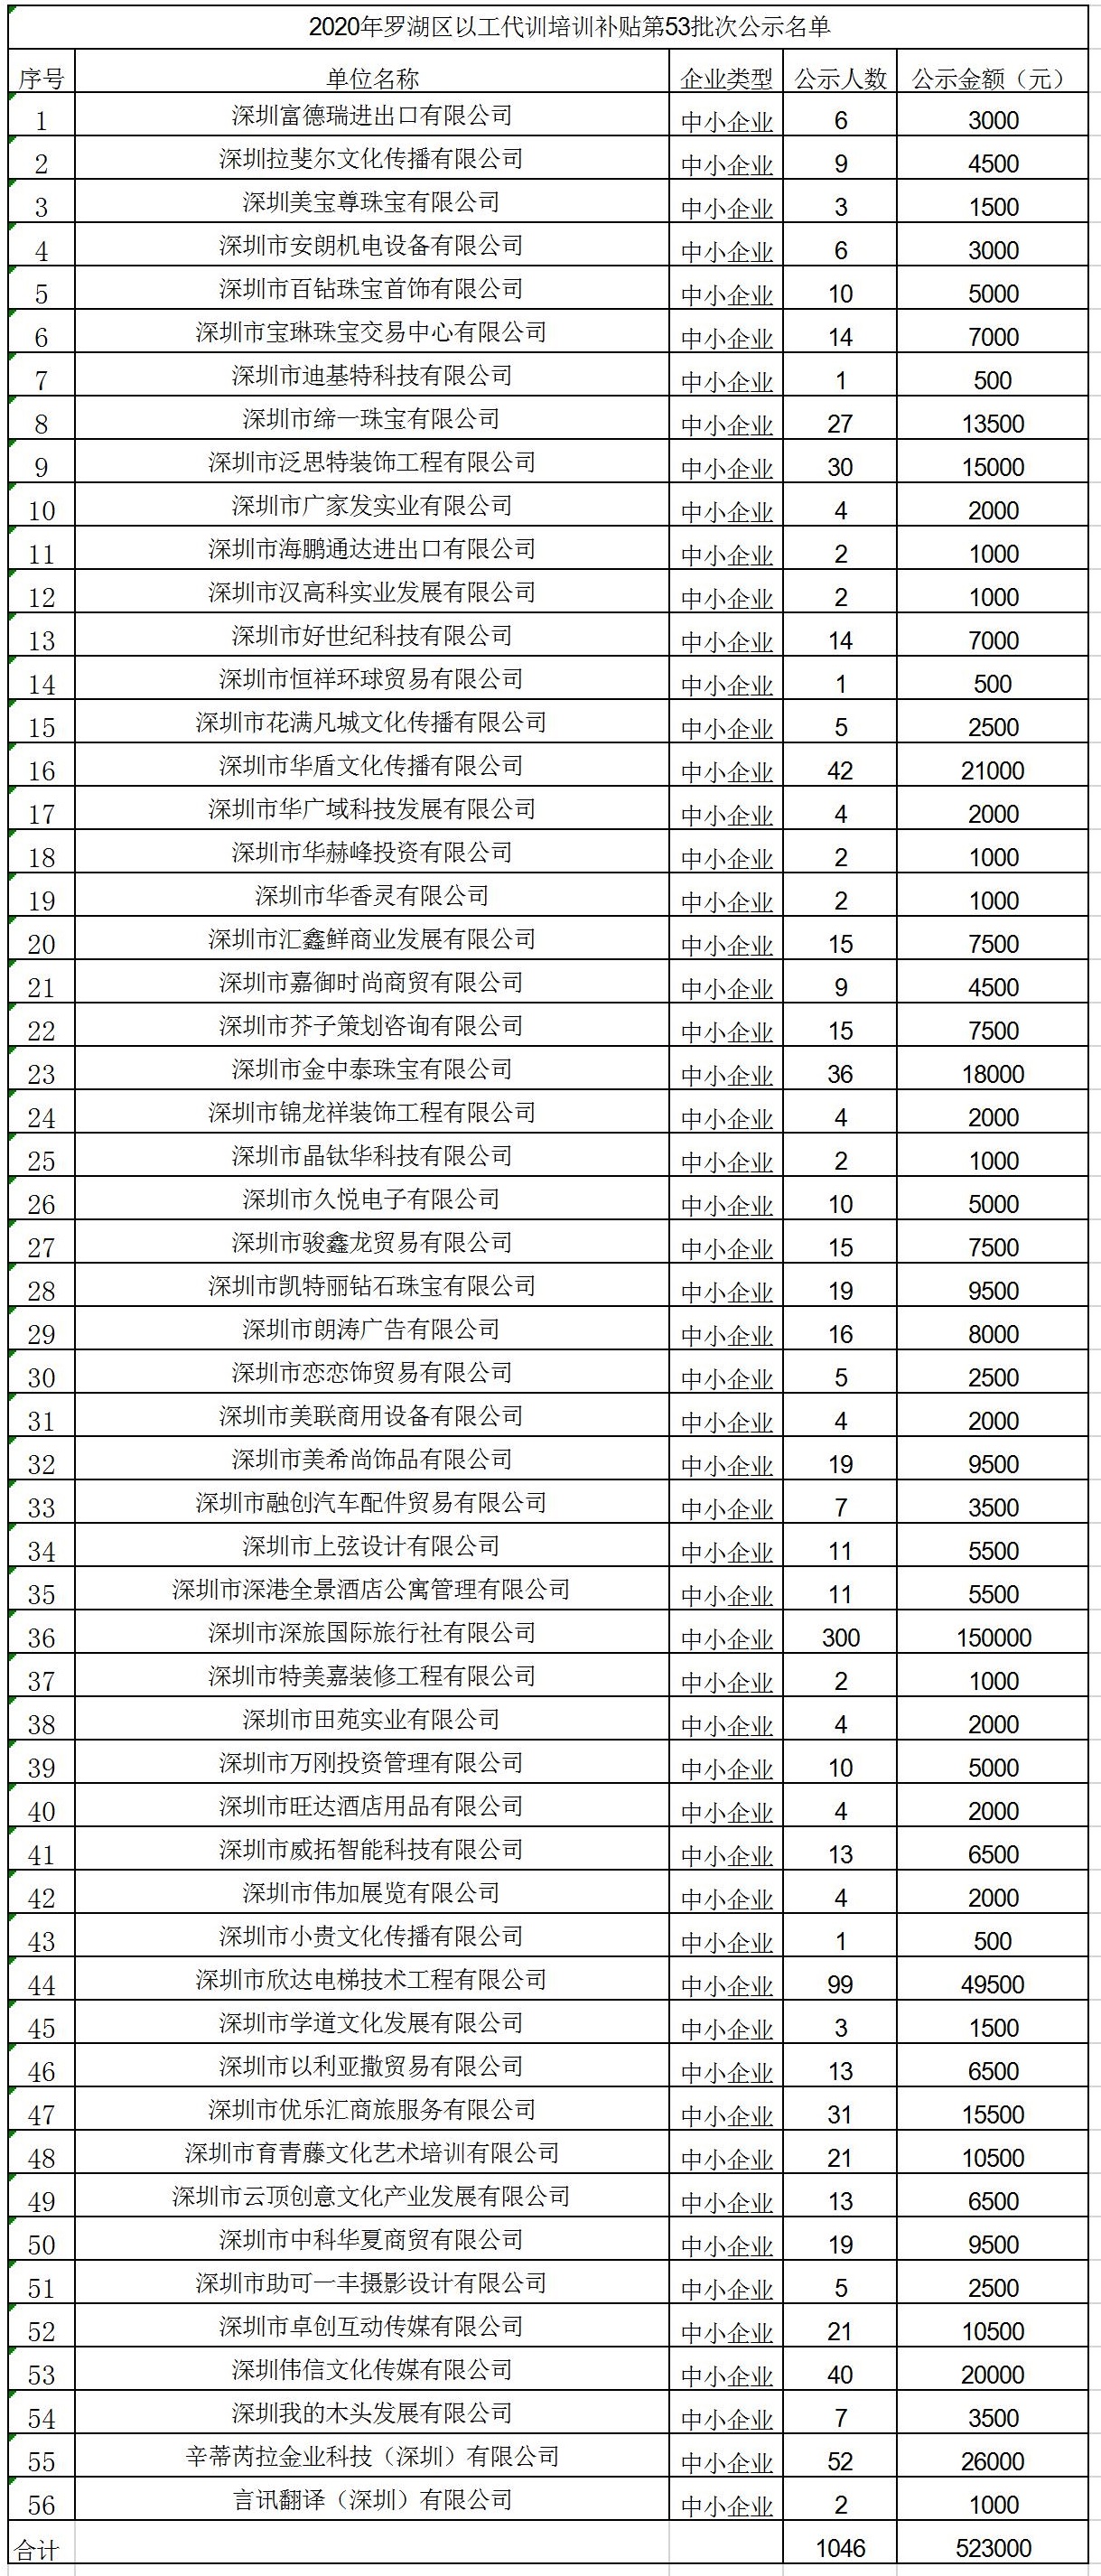 2020年深圳市罗湖区以工代训培训补贴第53批次公示名单.jpg